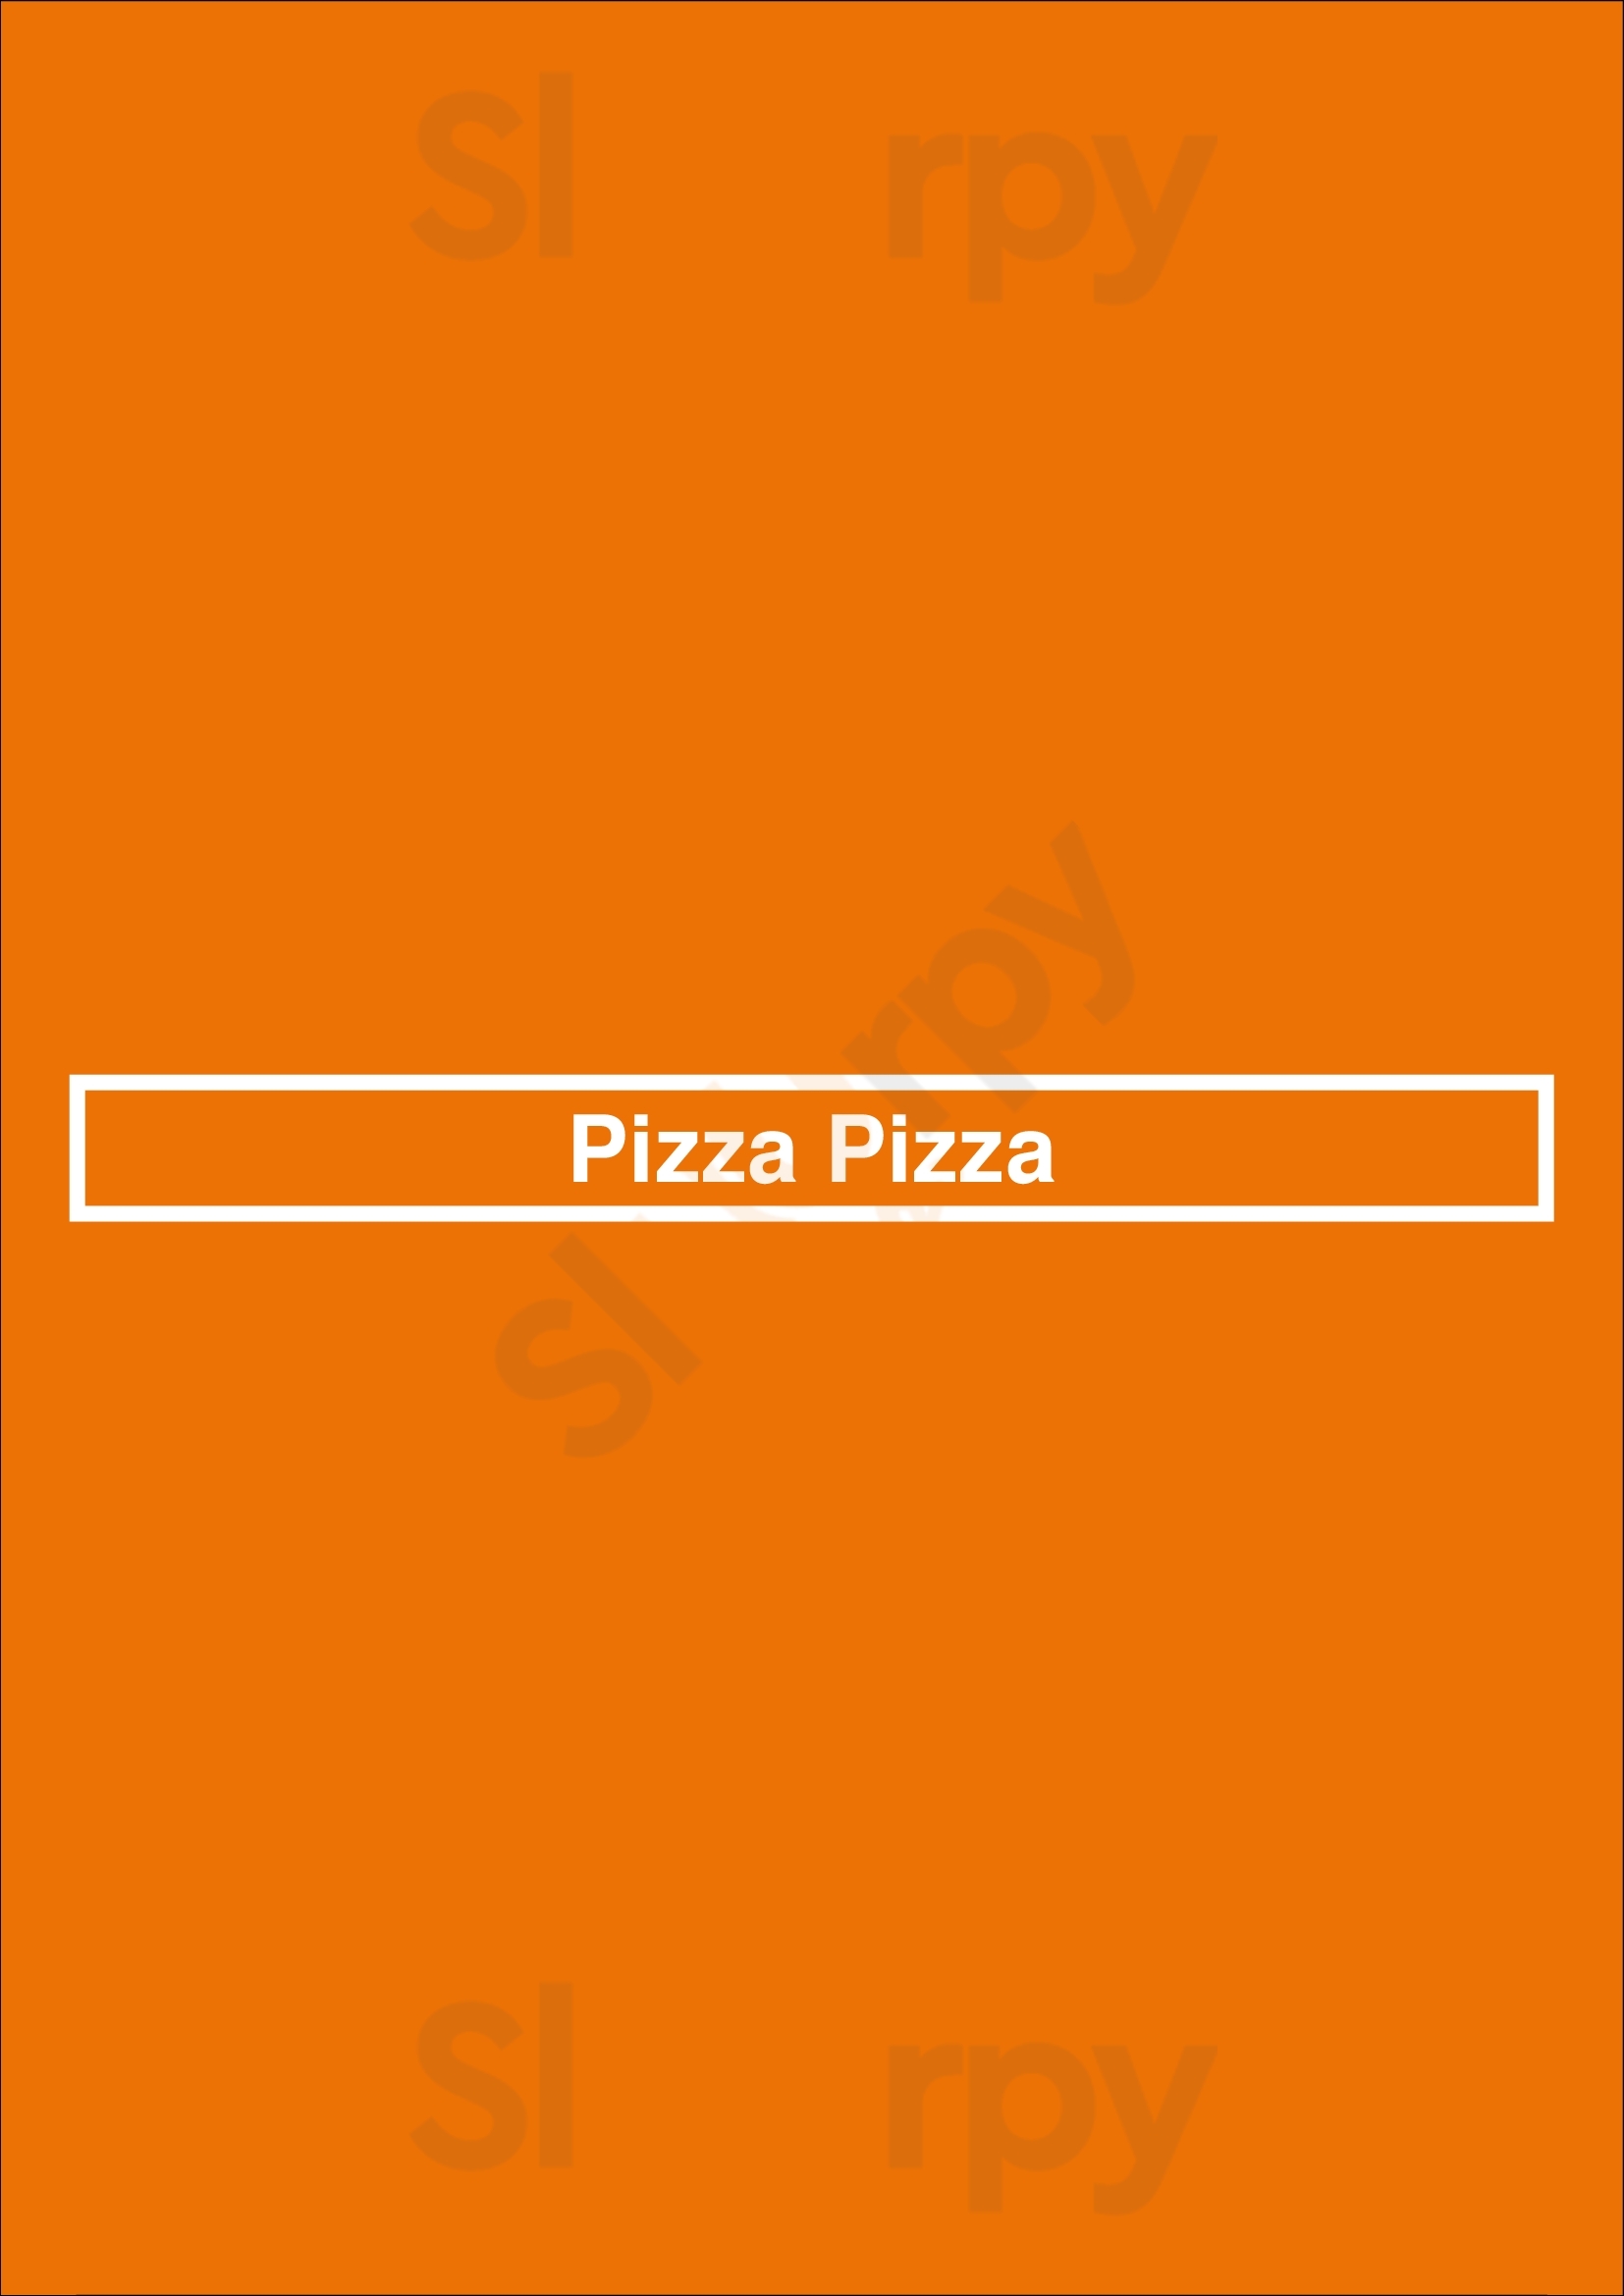 Pizza Pizza Winnipeg Menu - 1